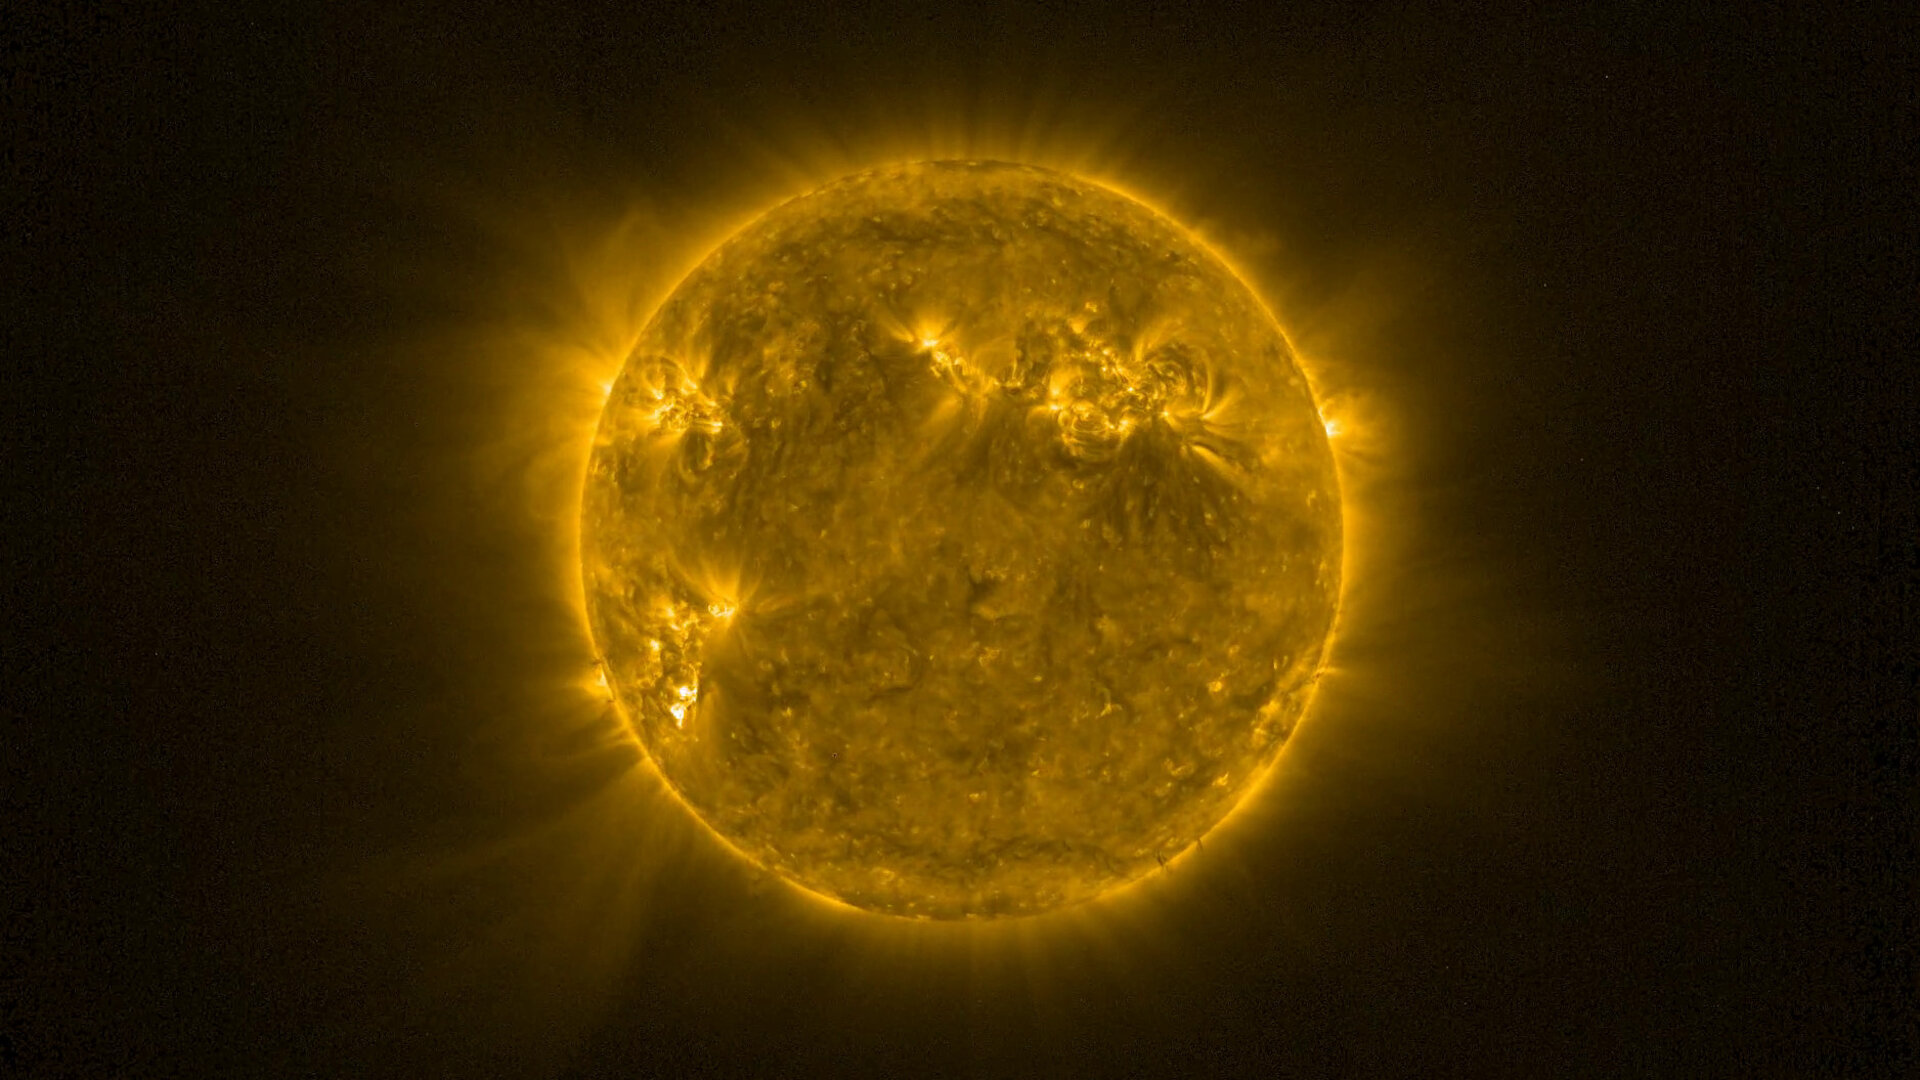 ESA / Galeria de imagens abaixo com o polo sul do Sol, regiões ativas, o Sol no periélio